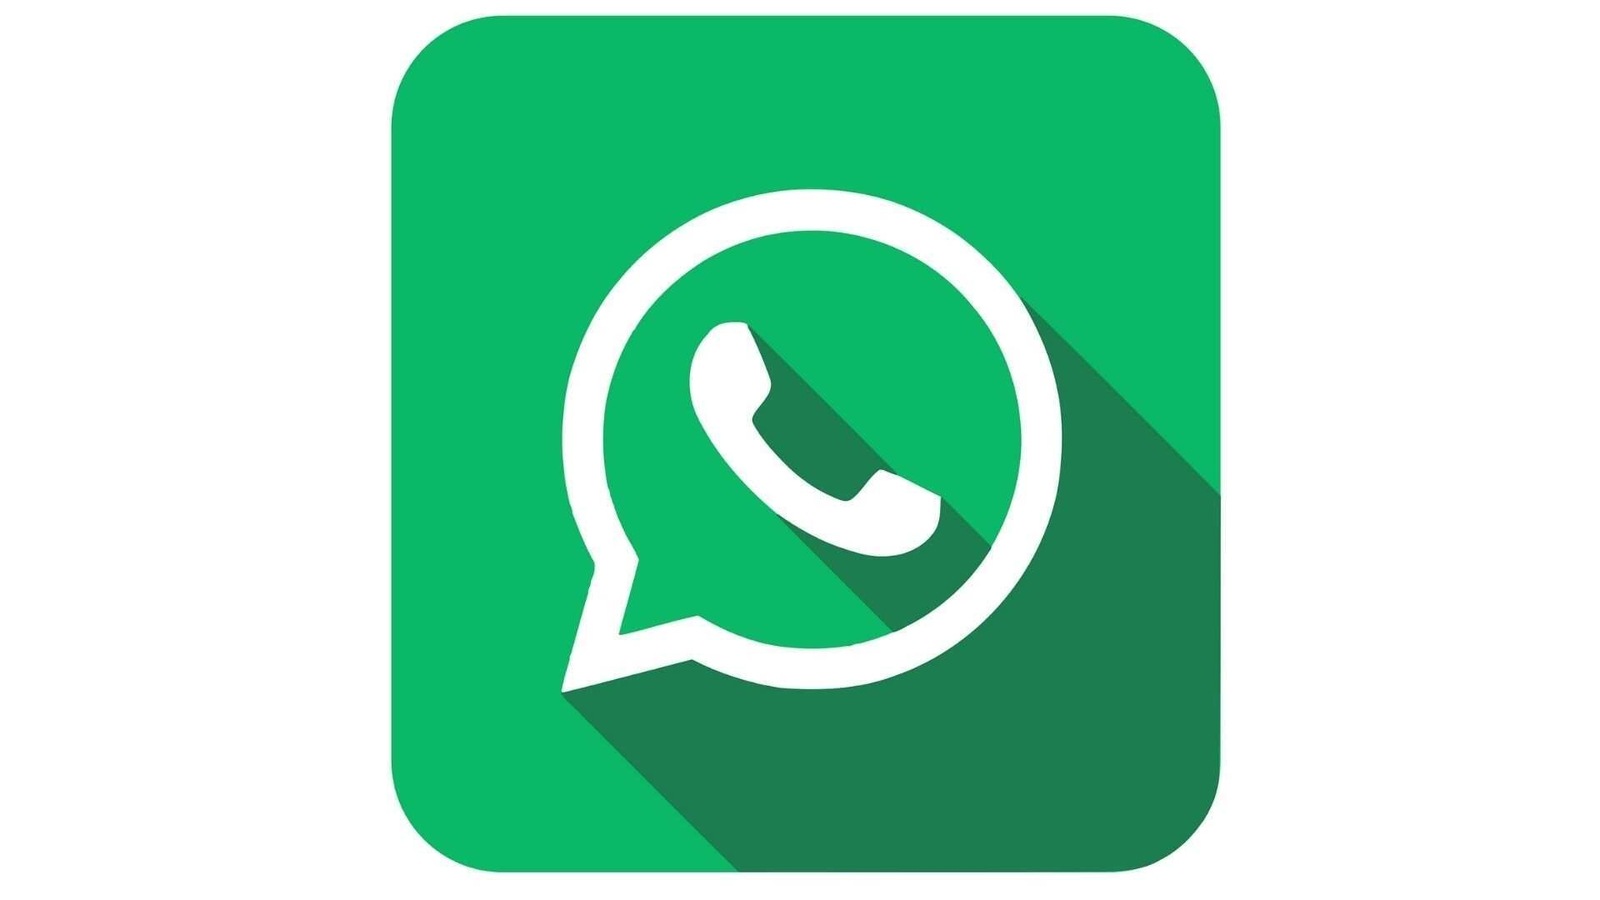 Logo, media, network, social, web, whatsapp icon - Free download